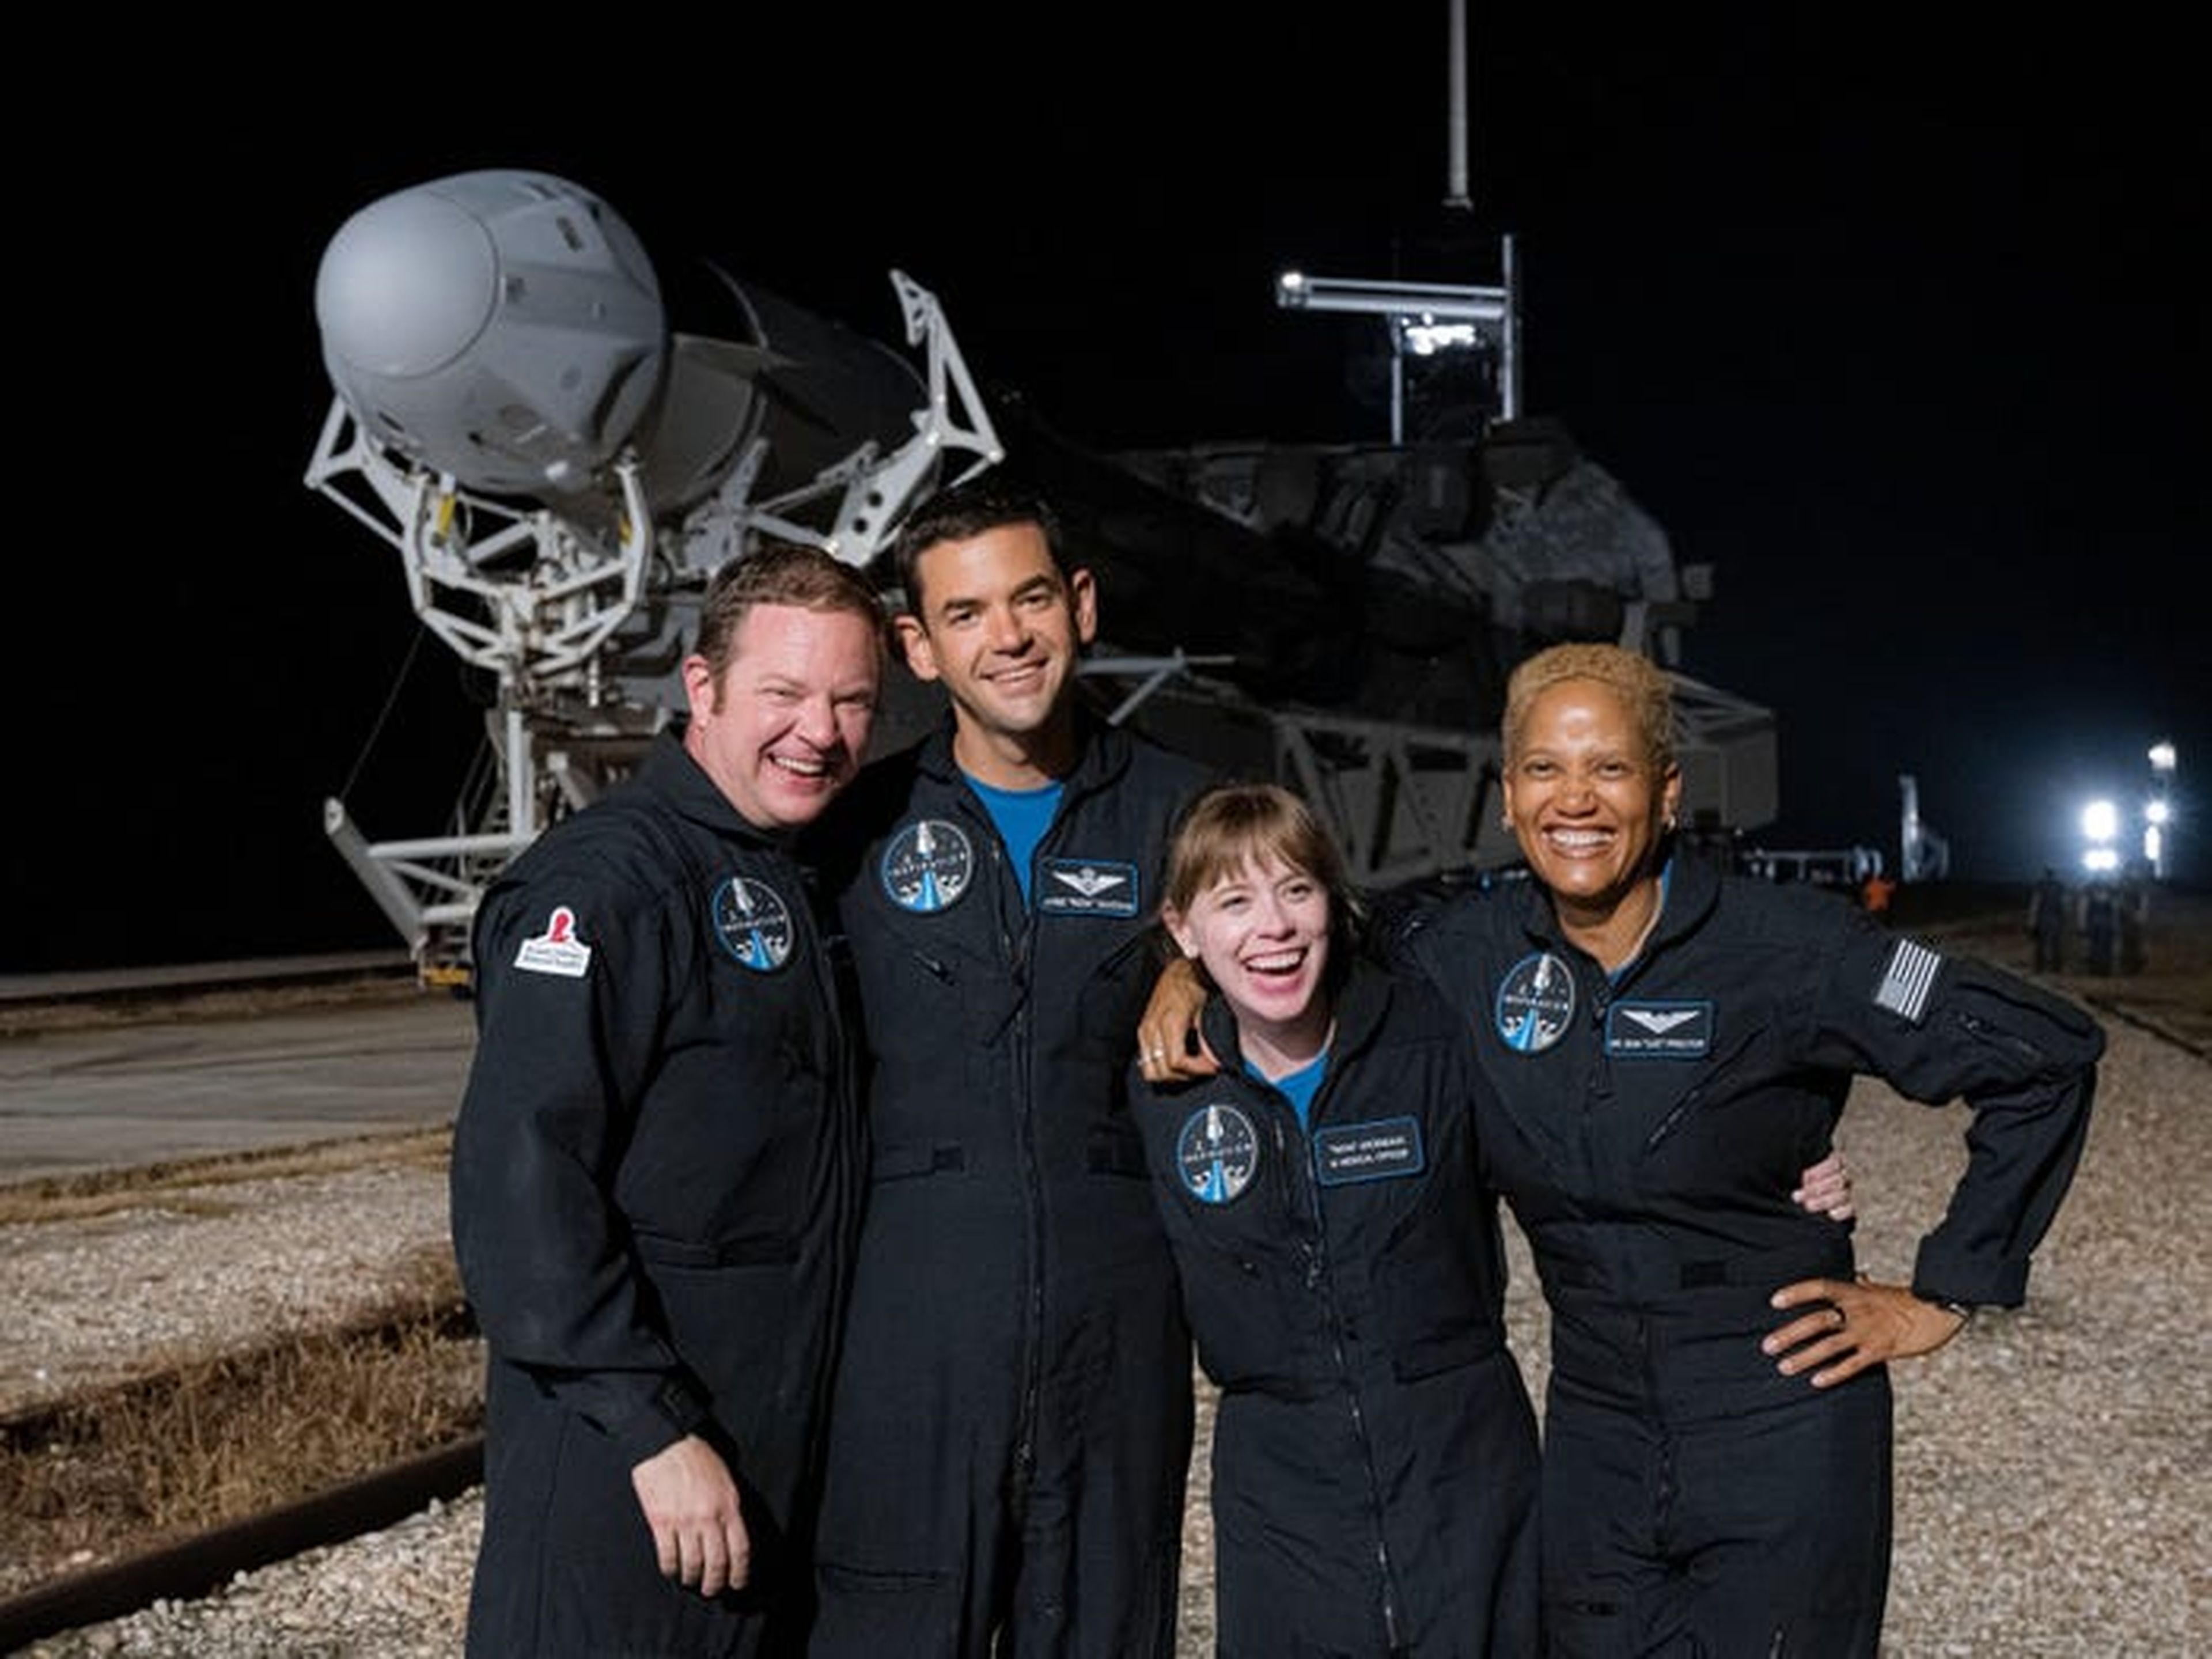 La tripulación de Inspiration4 posa frente al cohete Falcon 9 y la nave espacial Crew Dragon. De izquierda a derecha Chris Sembroski, Jared Isaacman, Hayley Arceneaux y Sian Proctor.